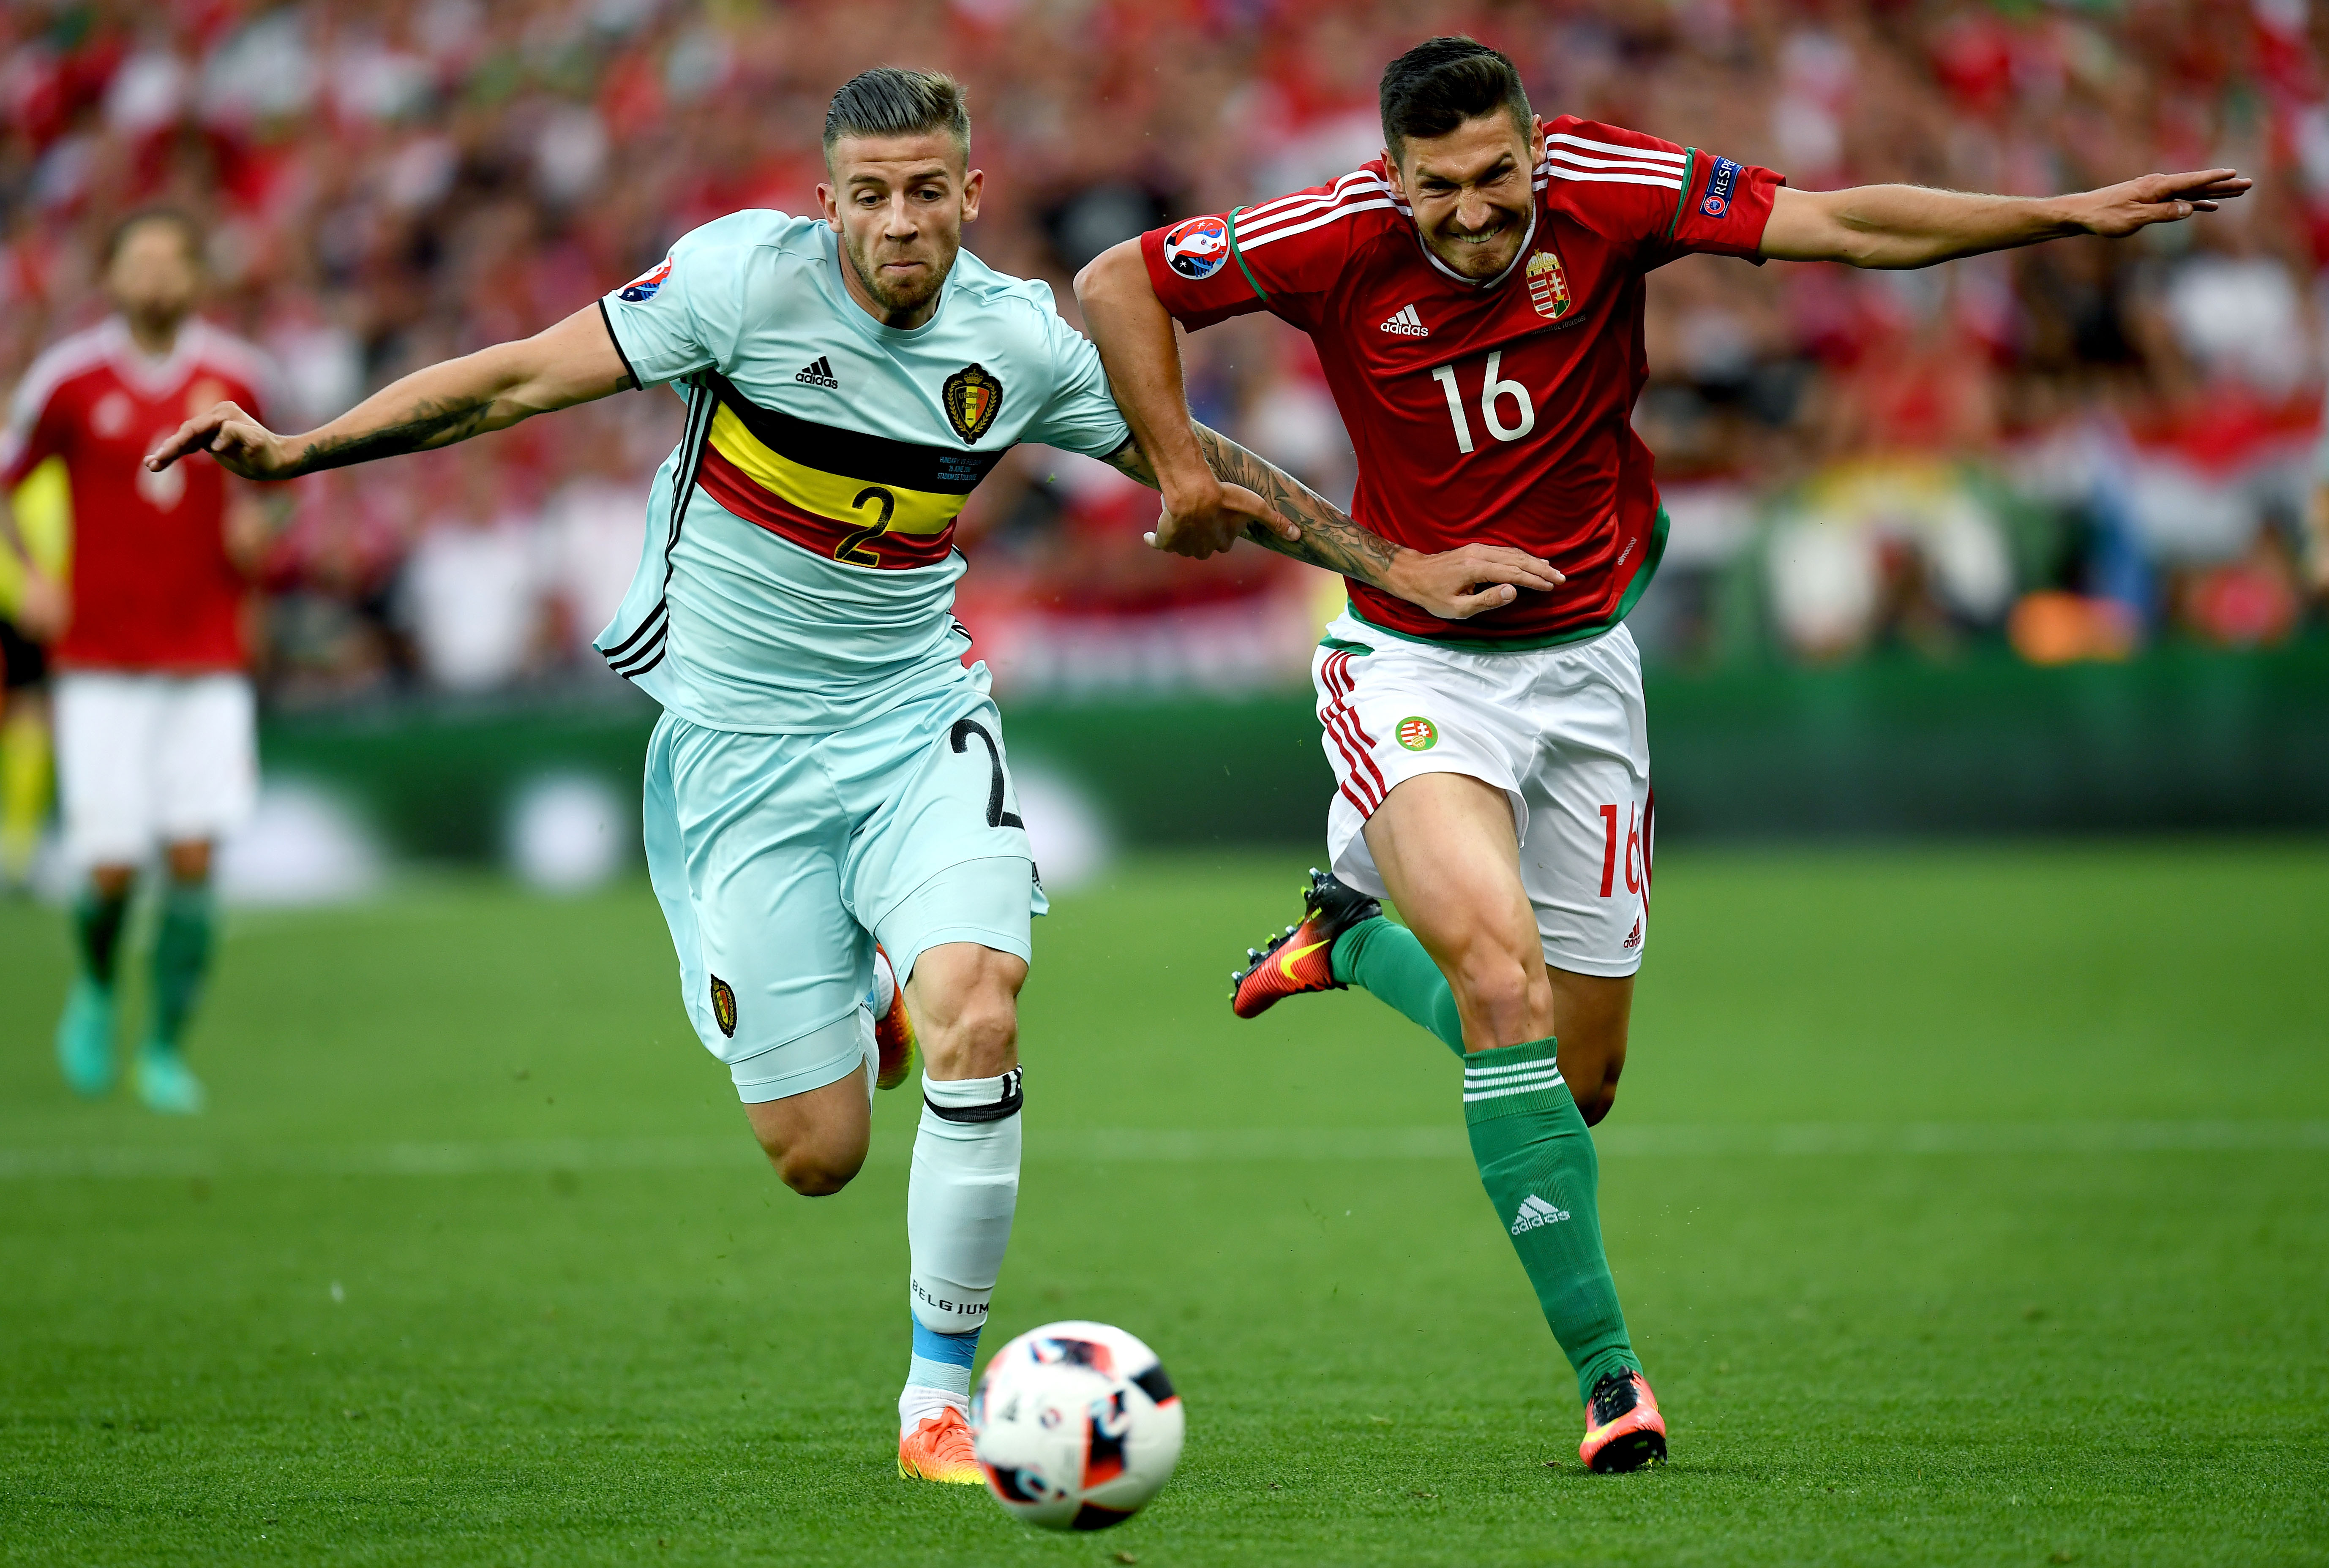 Hungary v Belgium - Round of 16: UEFA Euro 2016